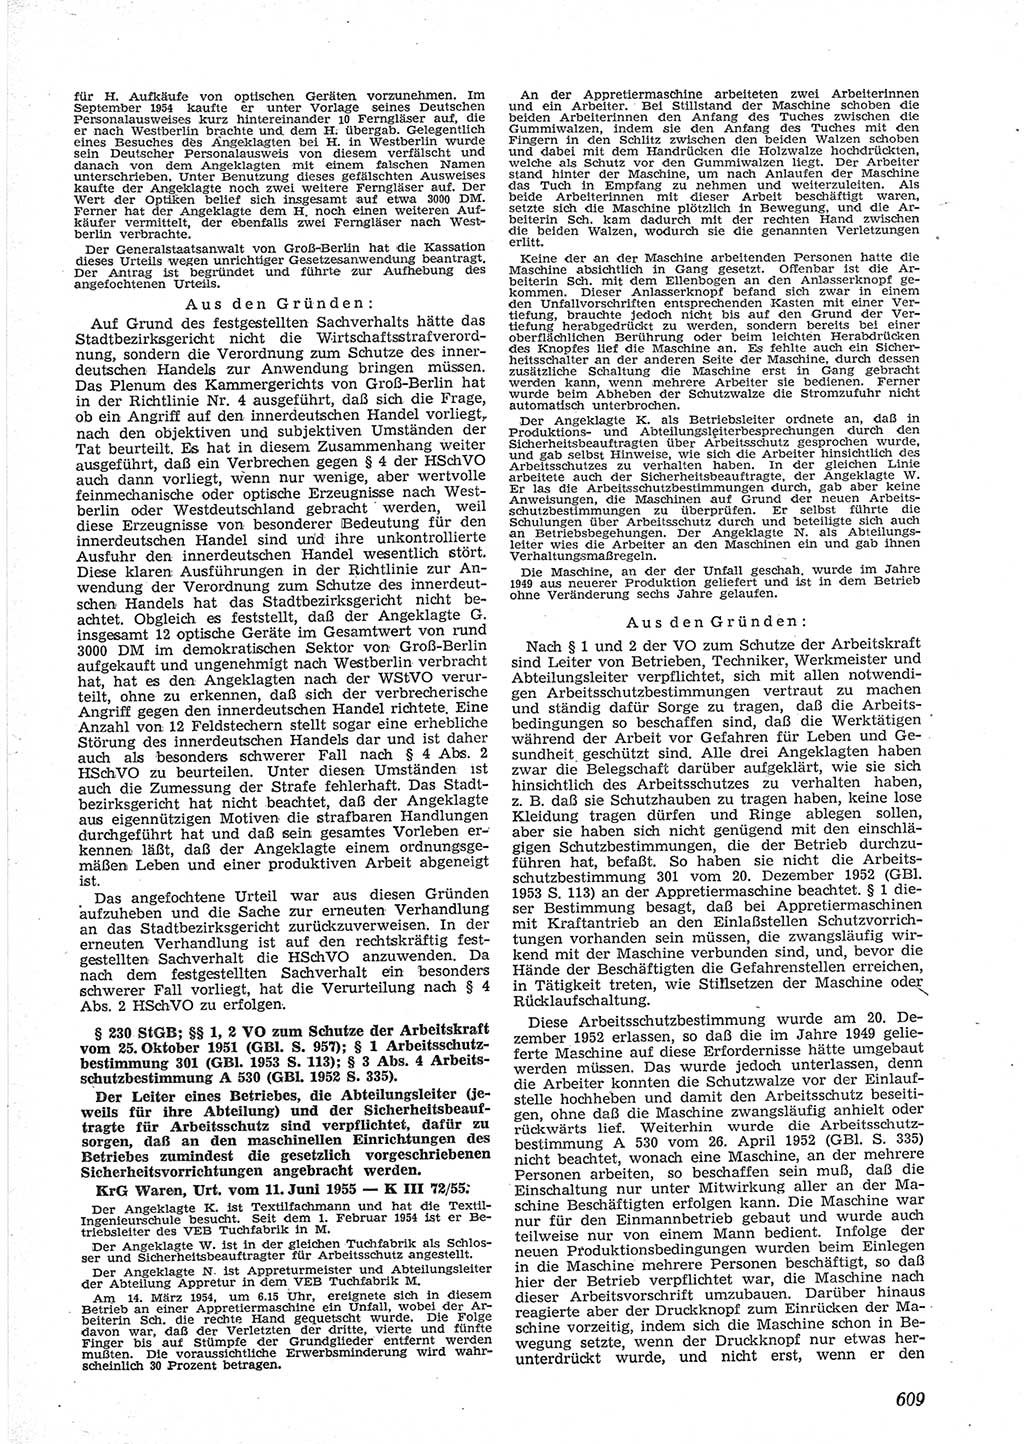 Neue Justiz (NJ), Zeitschrift für Recht und Rechtswissenschaft [Deutsche Demokratische Republik (DDR)], 9. Jahrgang 1955, Seite 609 (NJ DDR 1955, S. 609)